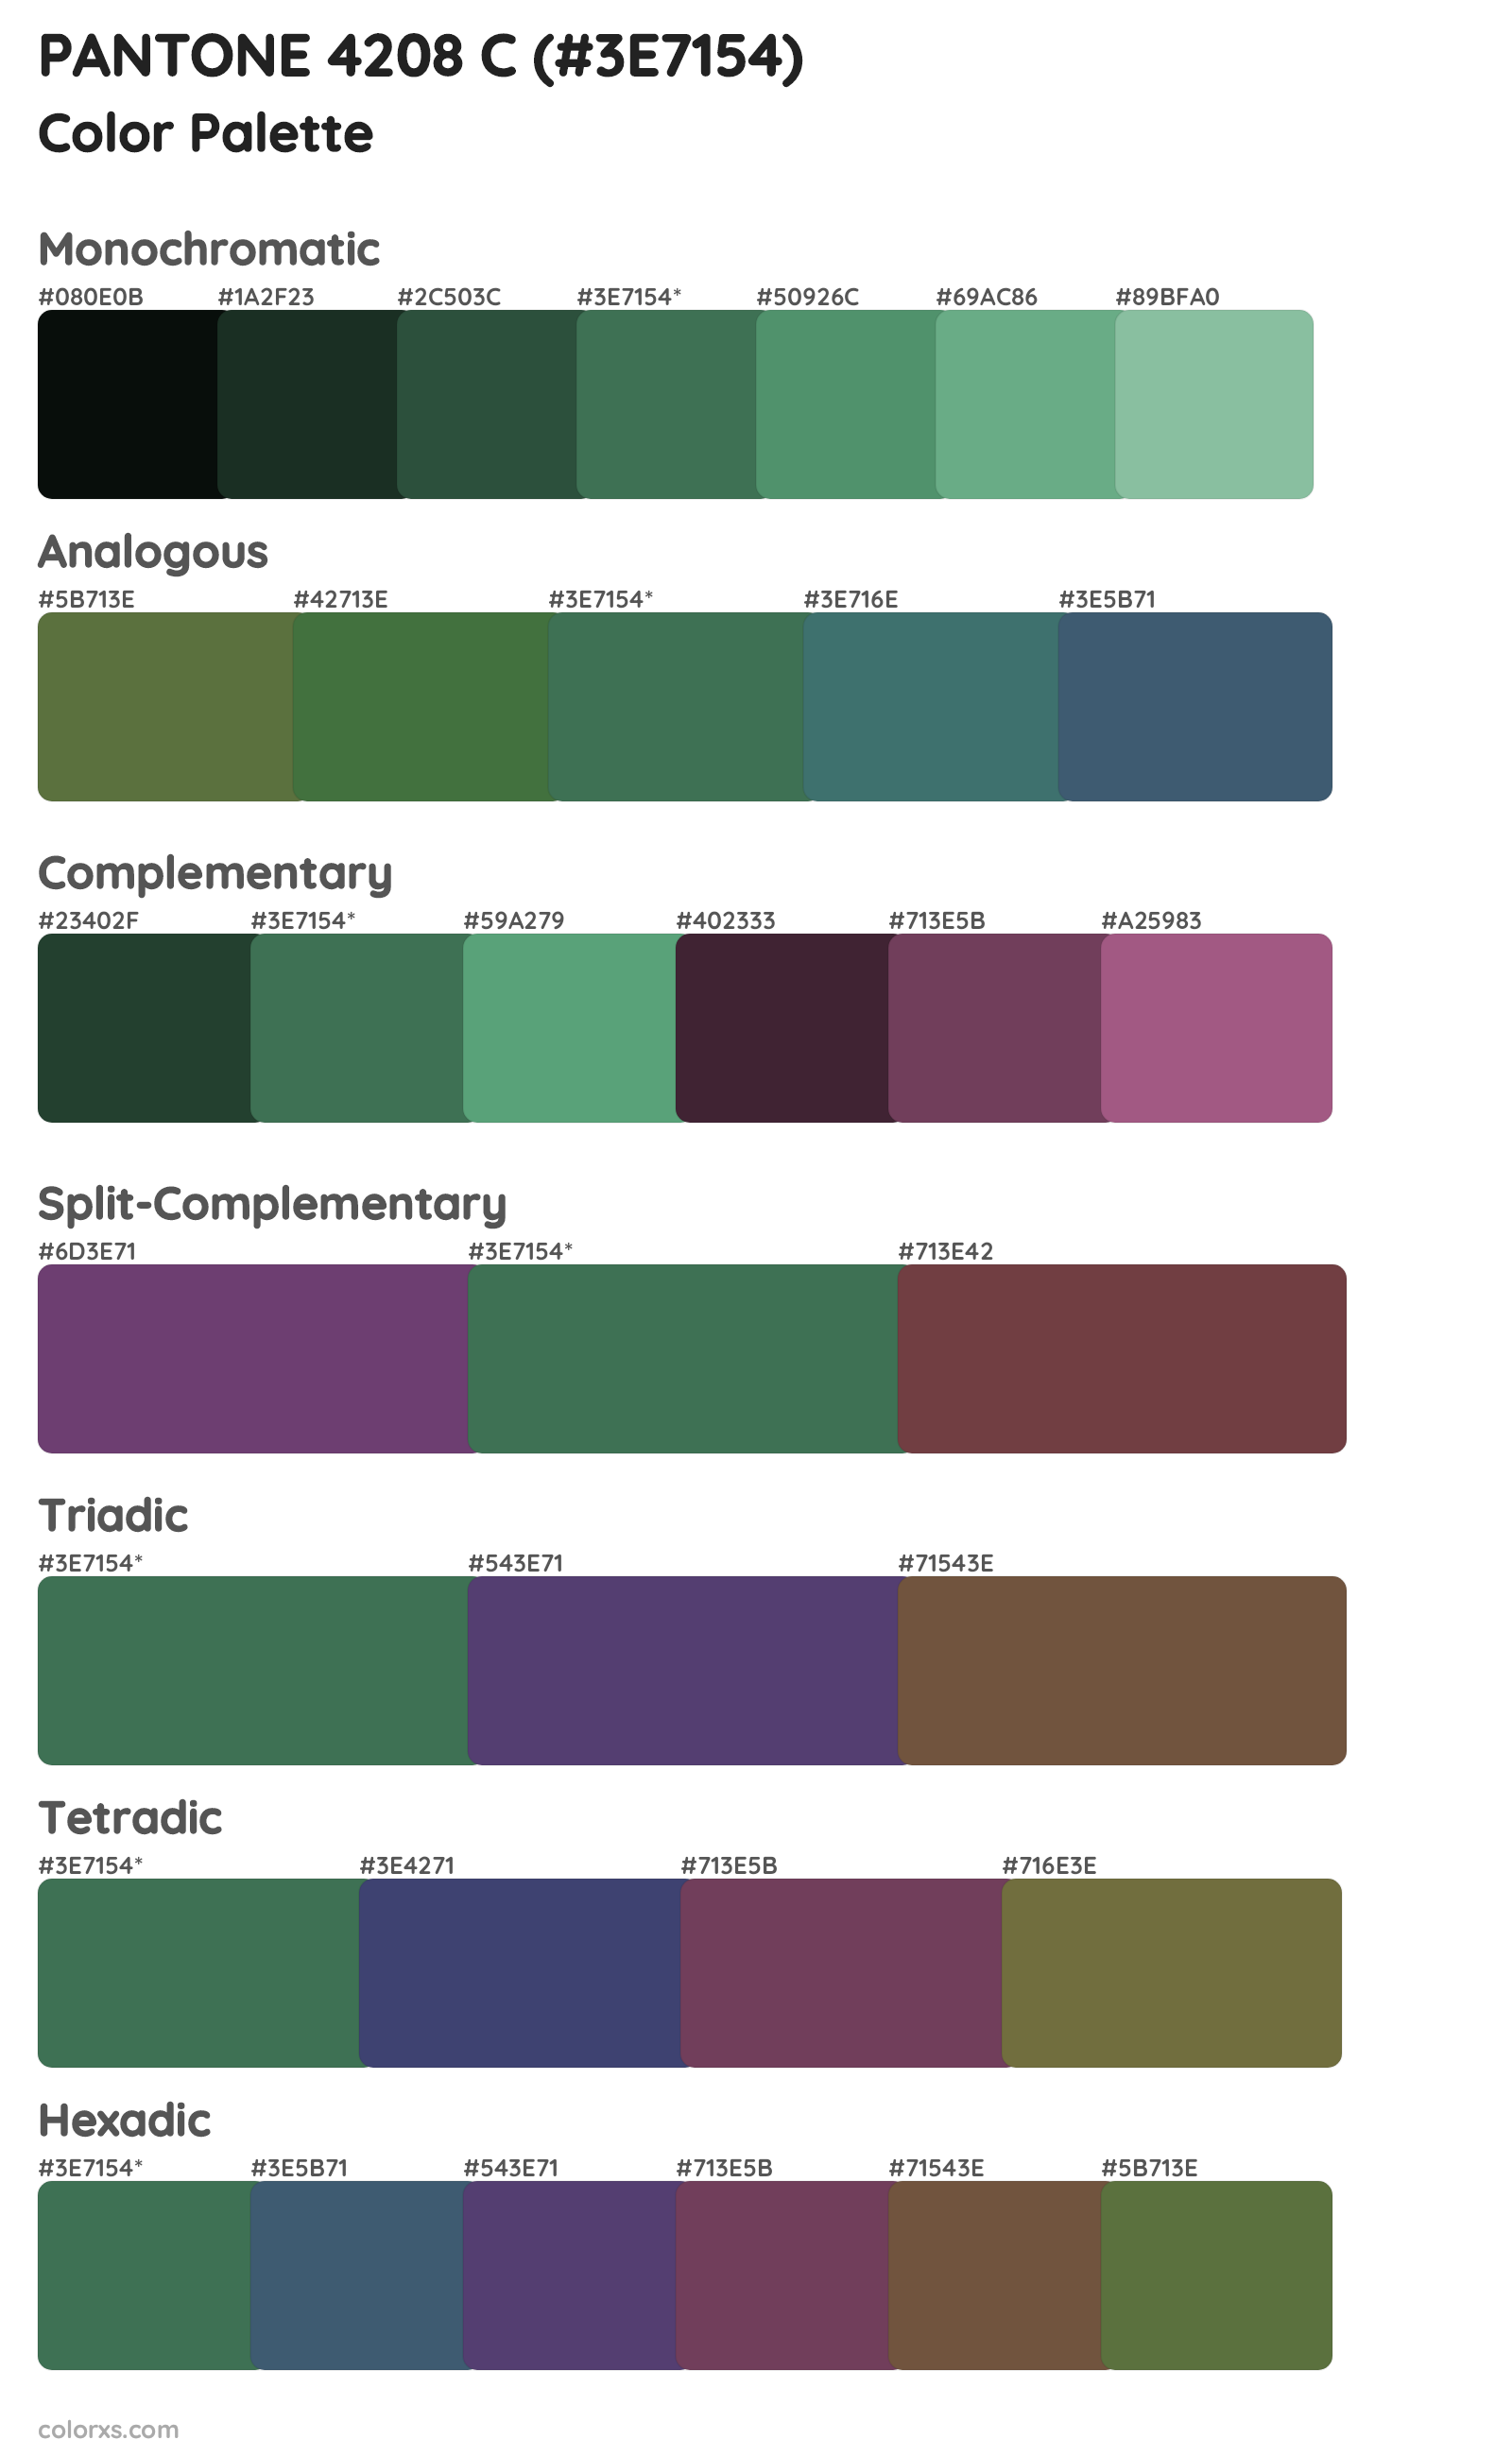 PANTONE 4208 C Color Scheme Palettes